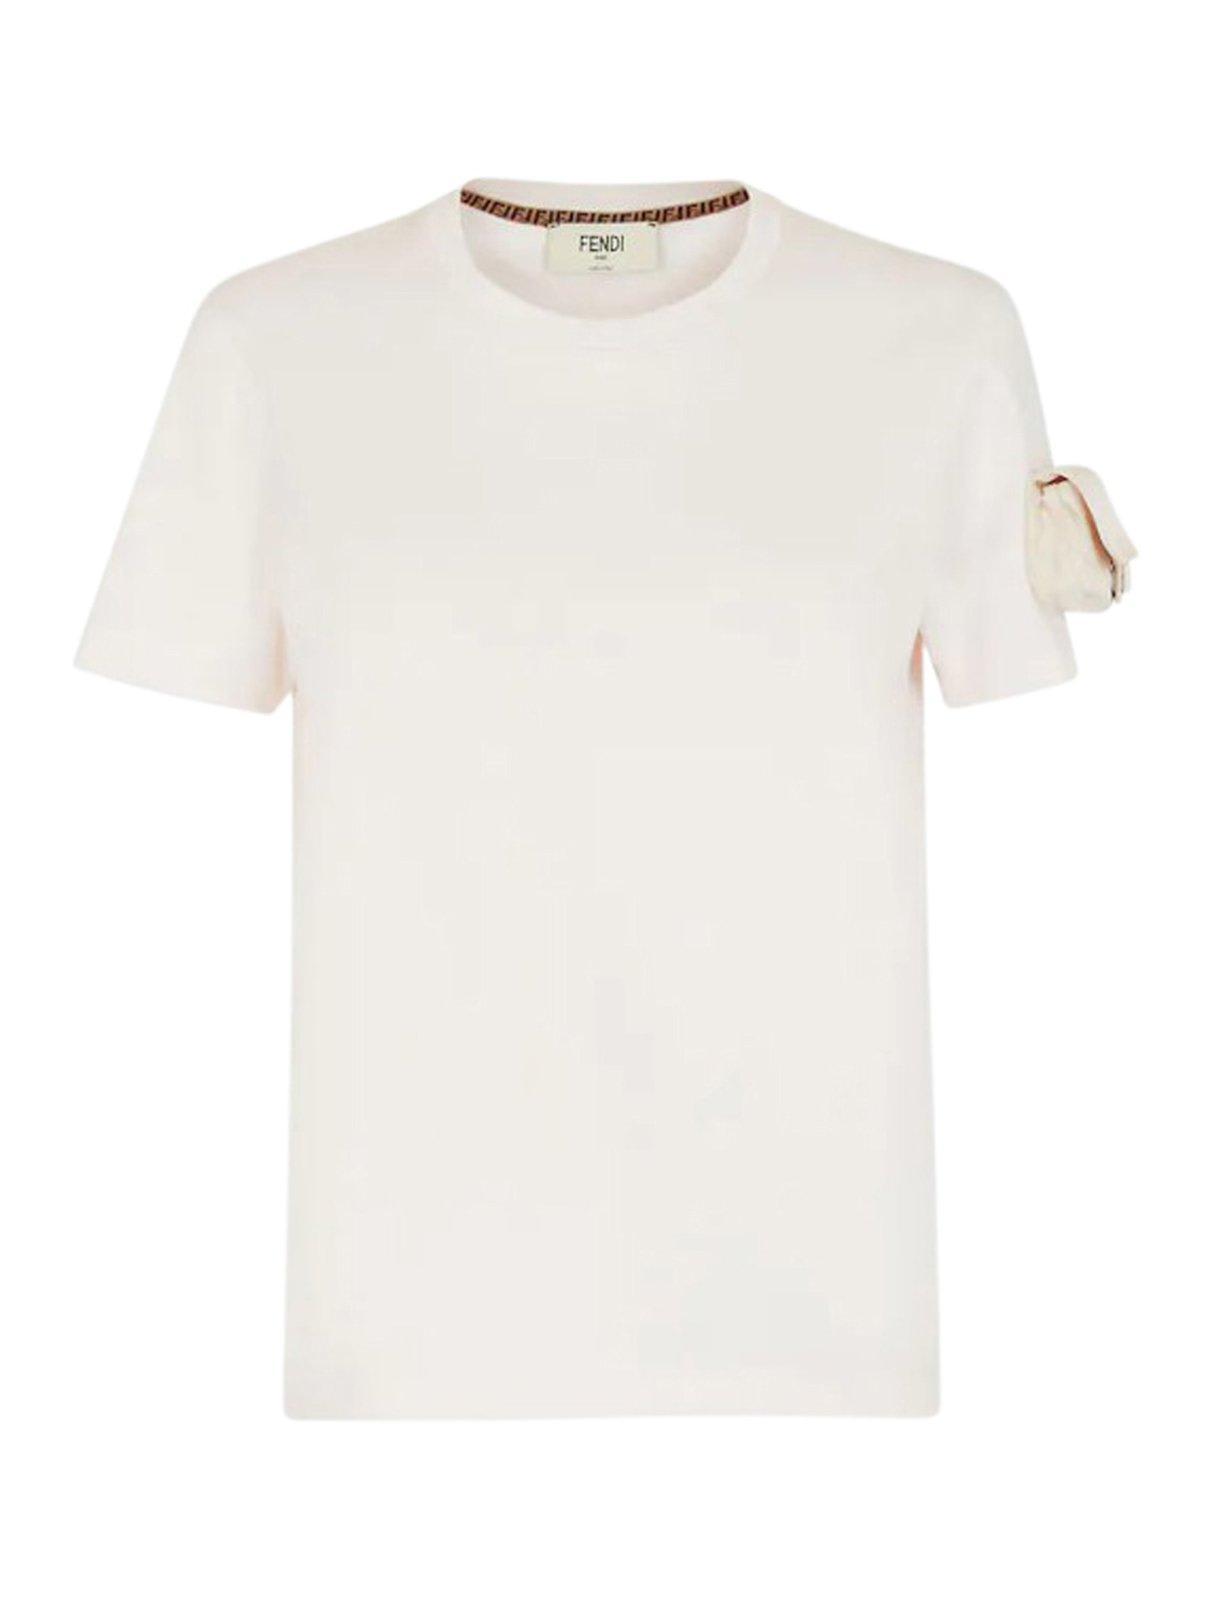 Fendi Baguette Pocket T-shirt in White | Lyst